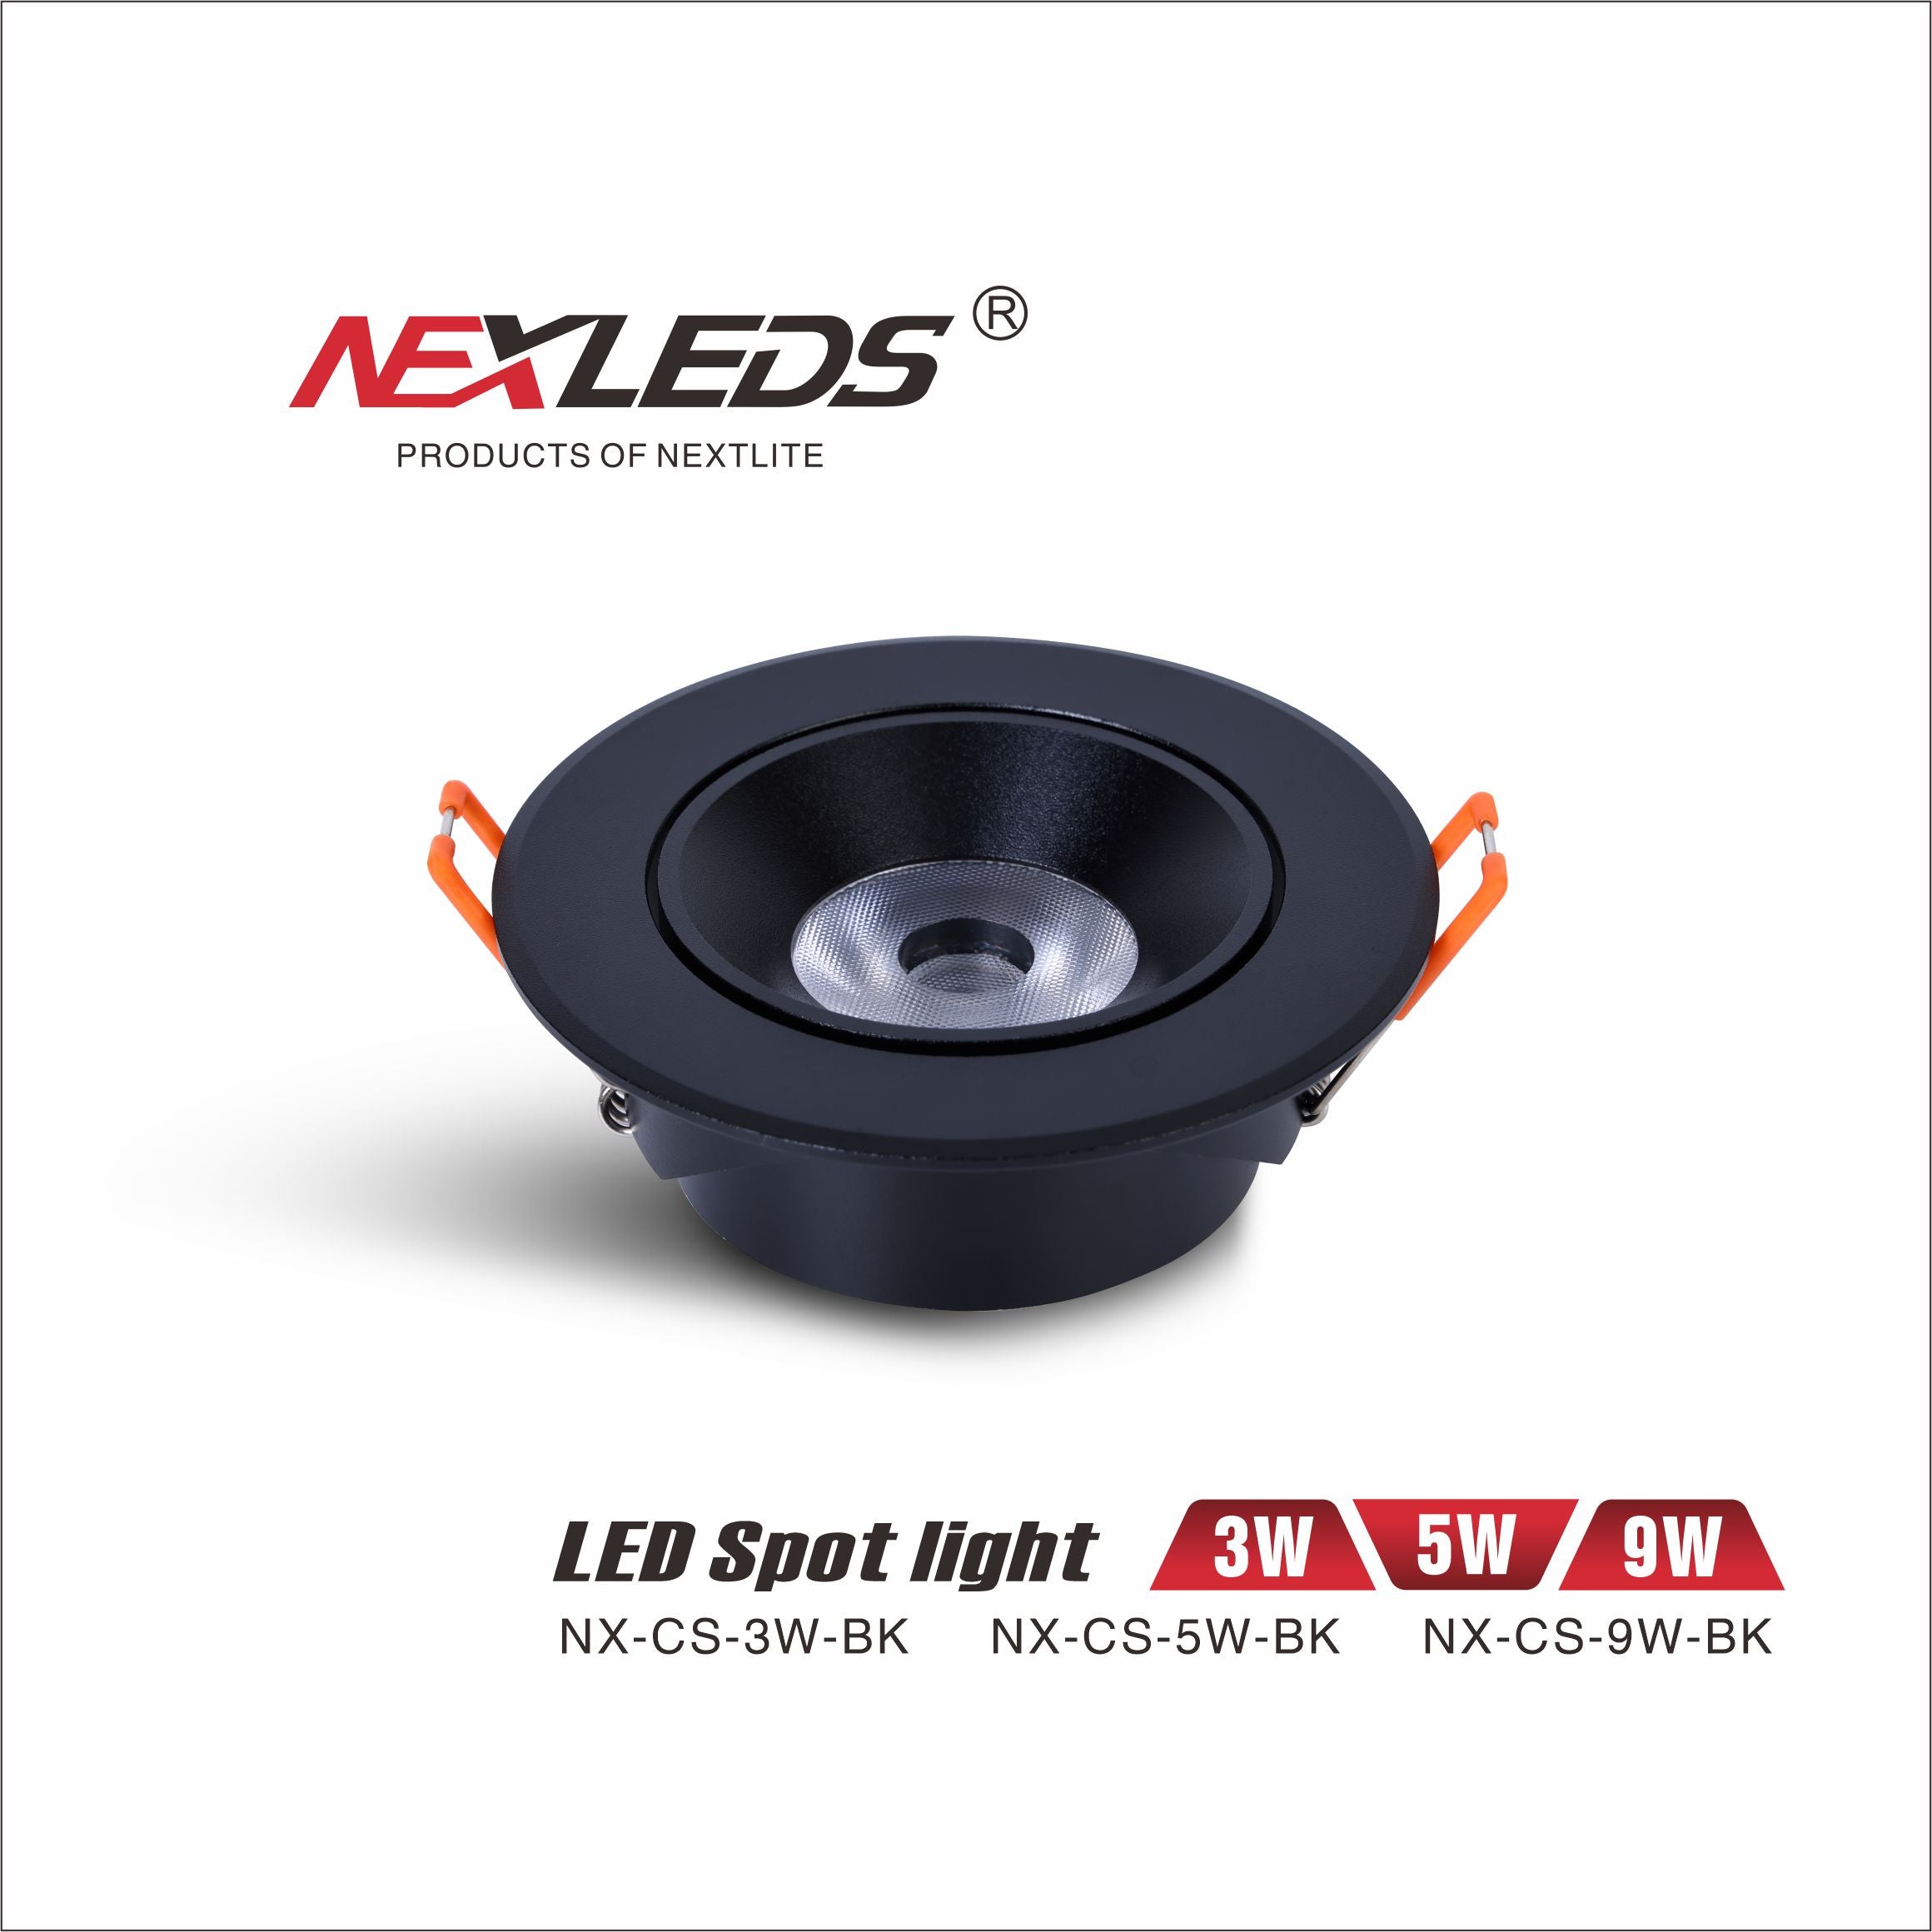 NX-CS-3W, 5W & 9W LED SPOT LIGHT